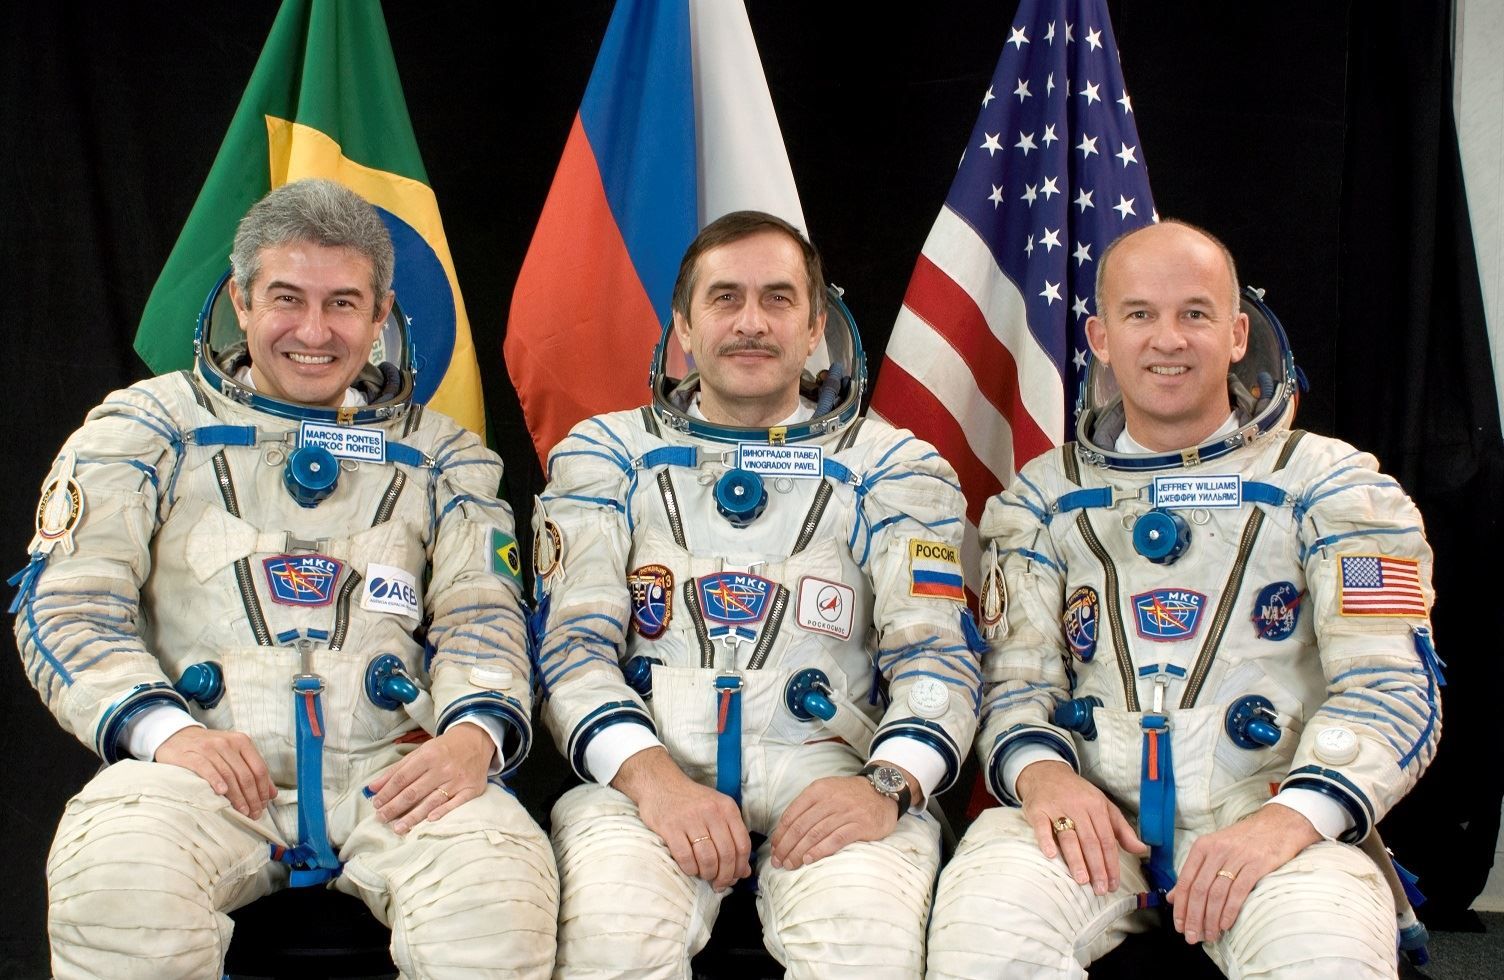 Маркос Понтис стана през 2006 г. първият бразилец в космоса на борда на кораб "Союз", с който стигна до МКС